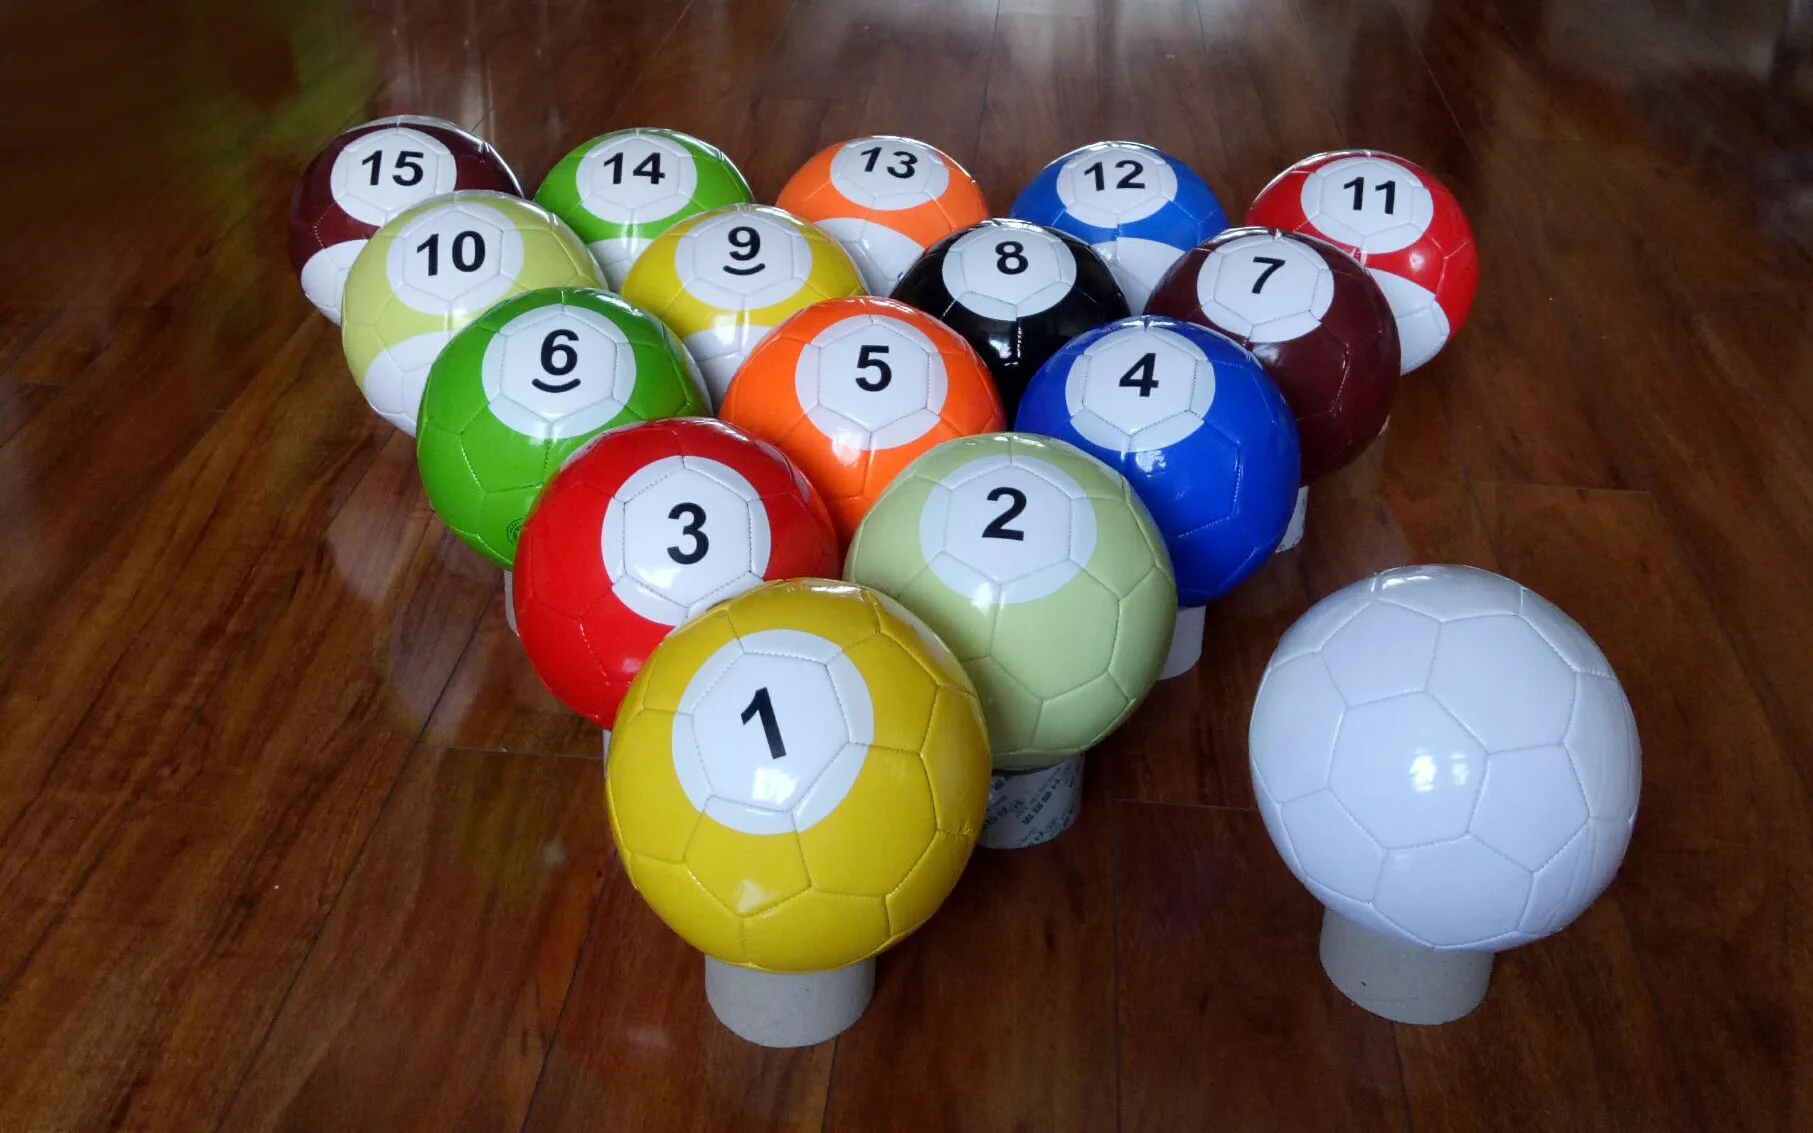 Sinuca Gigante com 16 bolas (Snookball) (7,5m x 3,5m / altura: 0,40m)